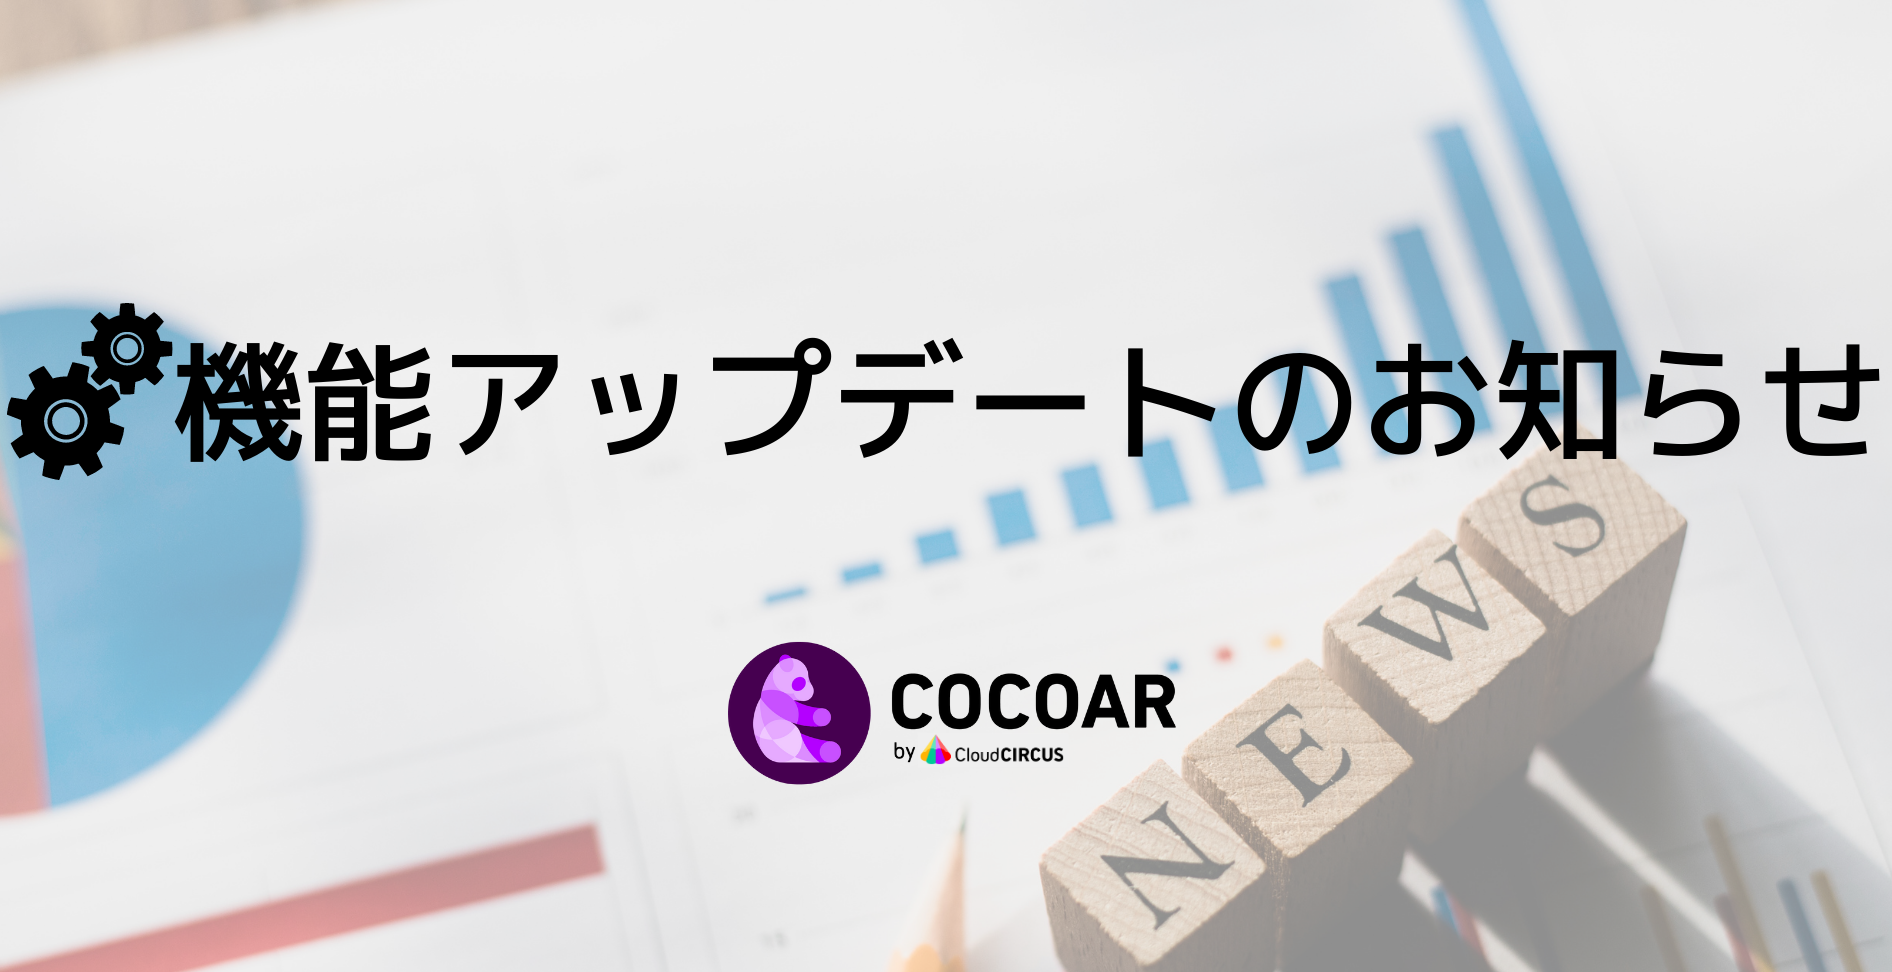 COCOAR13.3.0をリリースいたしました。